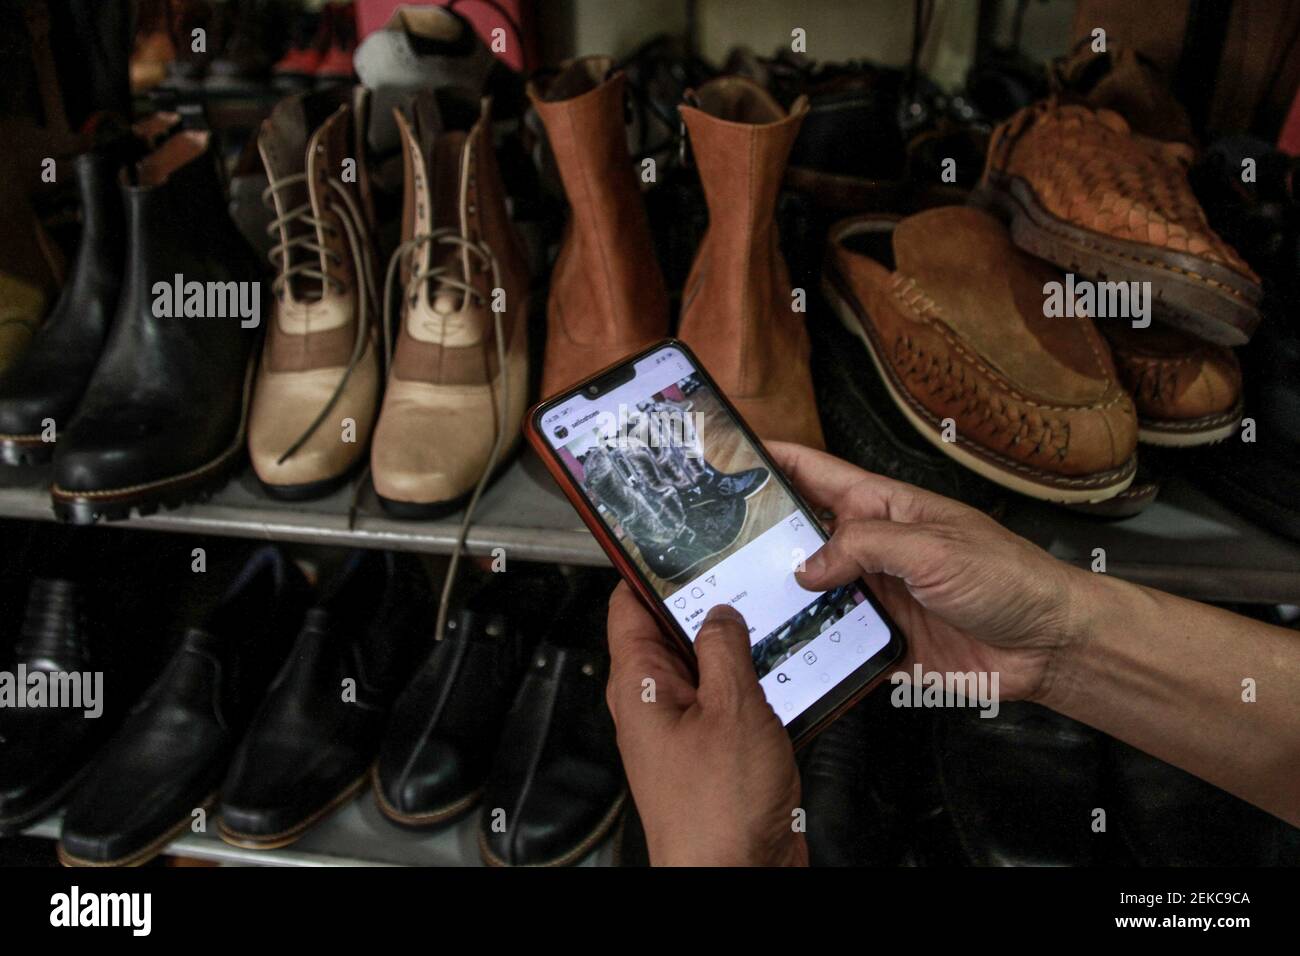 Un propietario de zapatería toma fotos de zapatos para vender en línea en  Malang. Rini, el dueño de la zapatería se ve obligado a hacer la promoción  y las ventas en línea